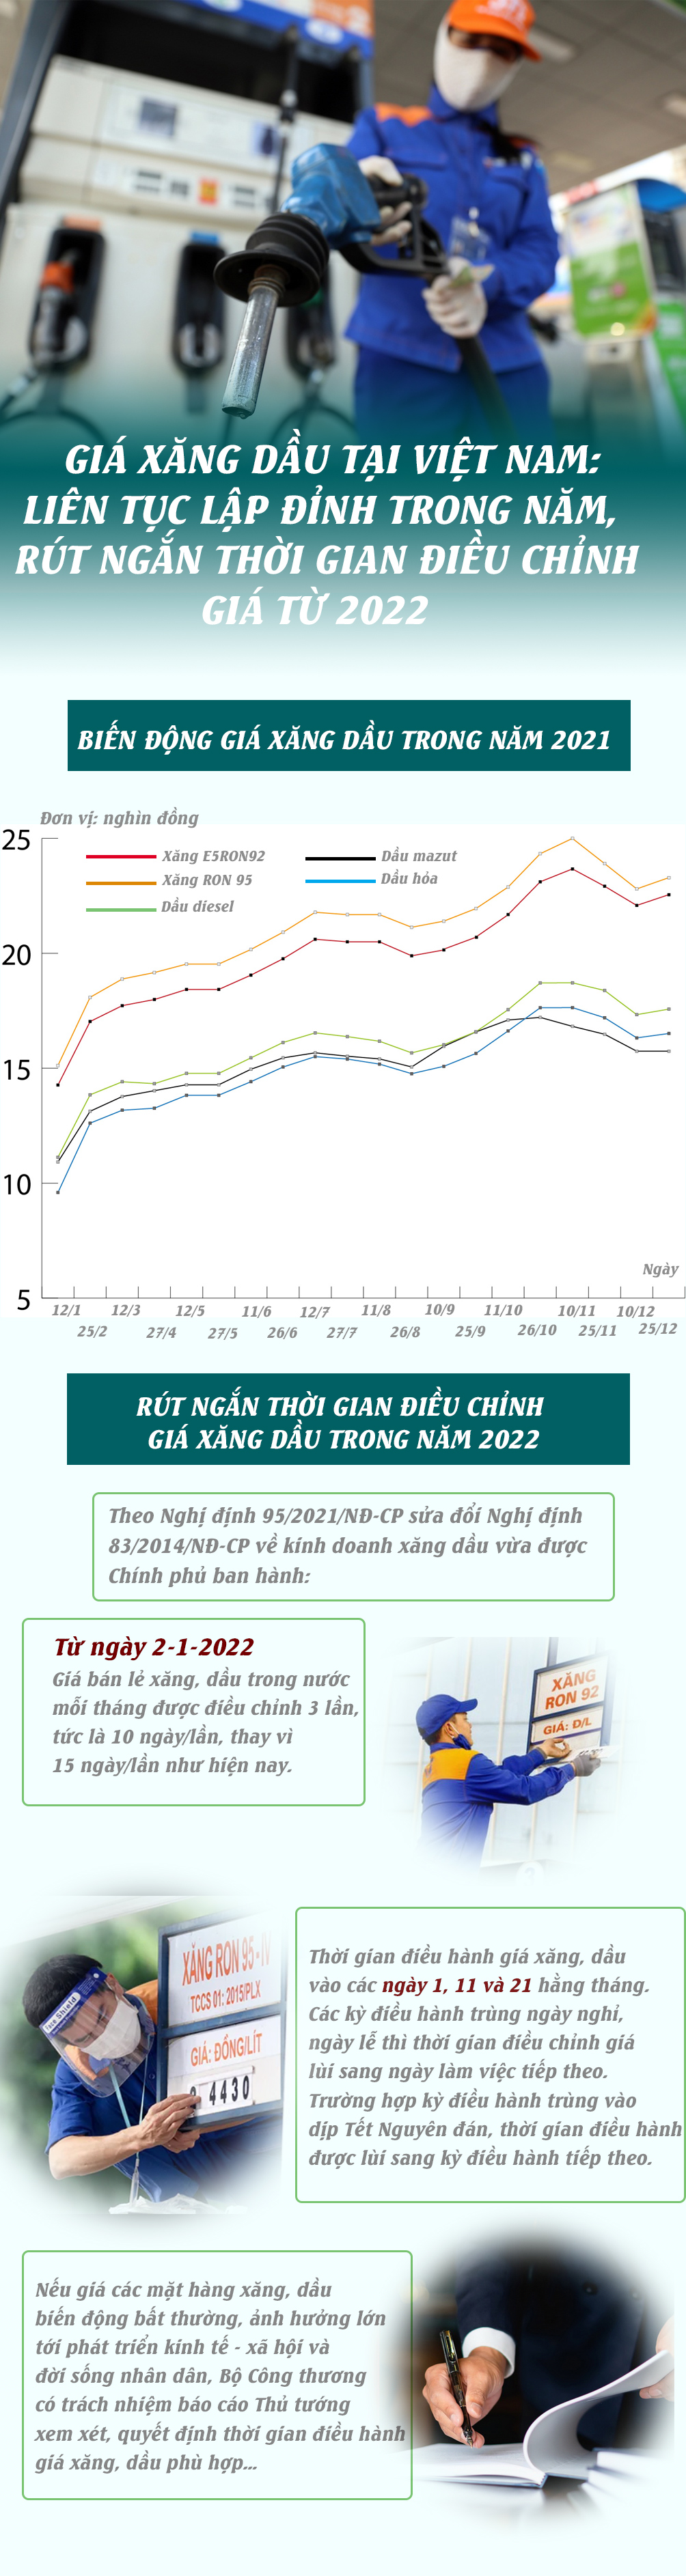 Giá xăng dầu tại Việt Nam: Liên tục lập đỉnh trong năm, rút ngắn thời gian điều chỉnh giá từ 2022 - 1